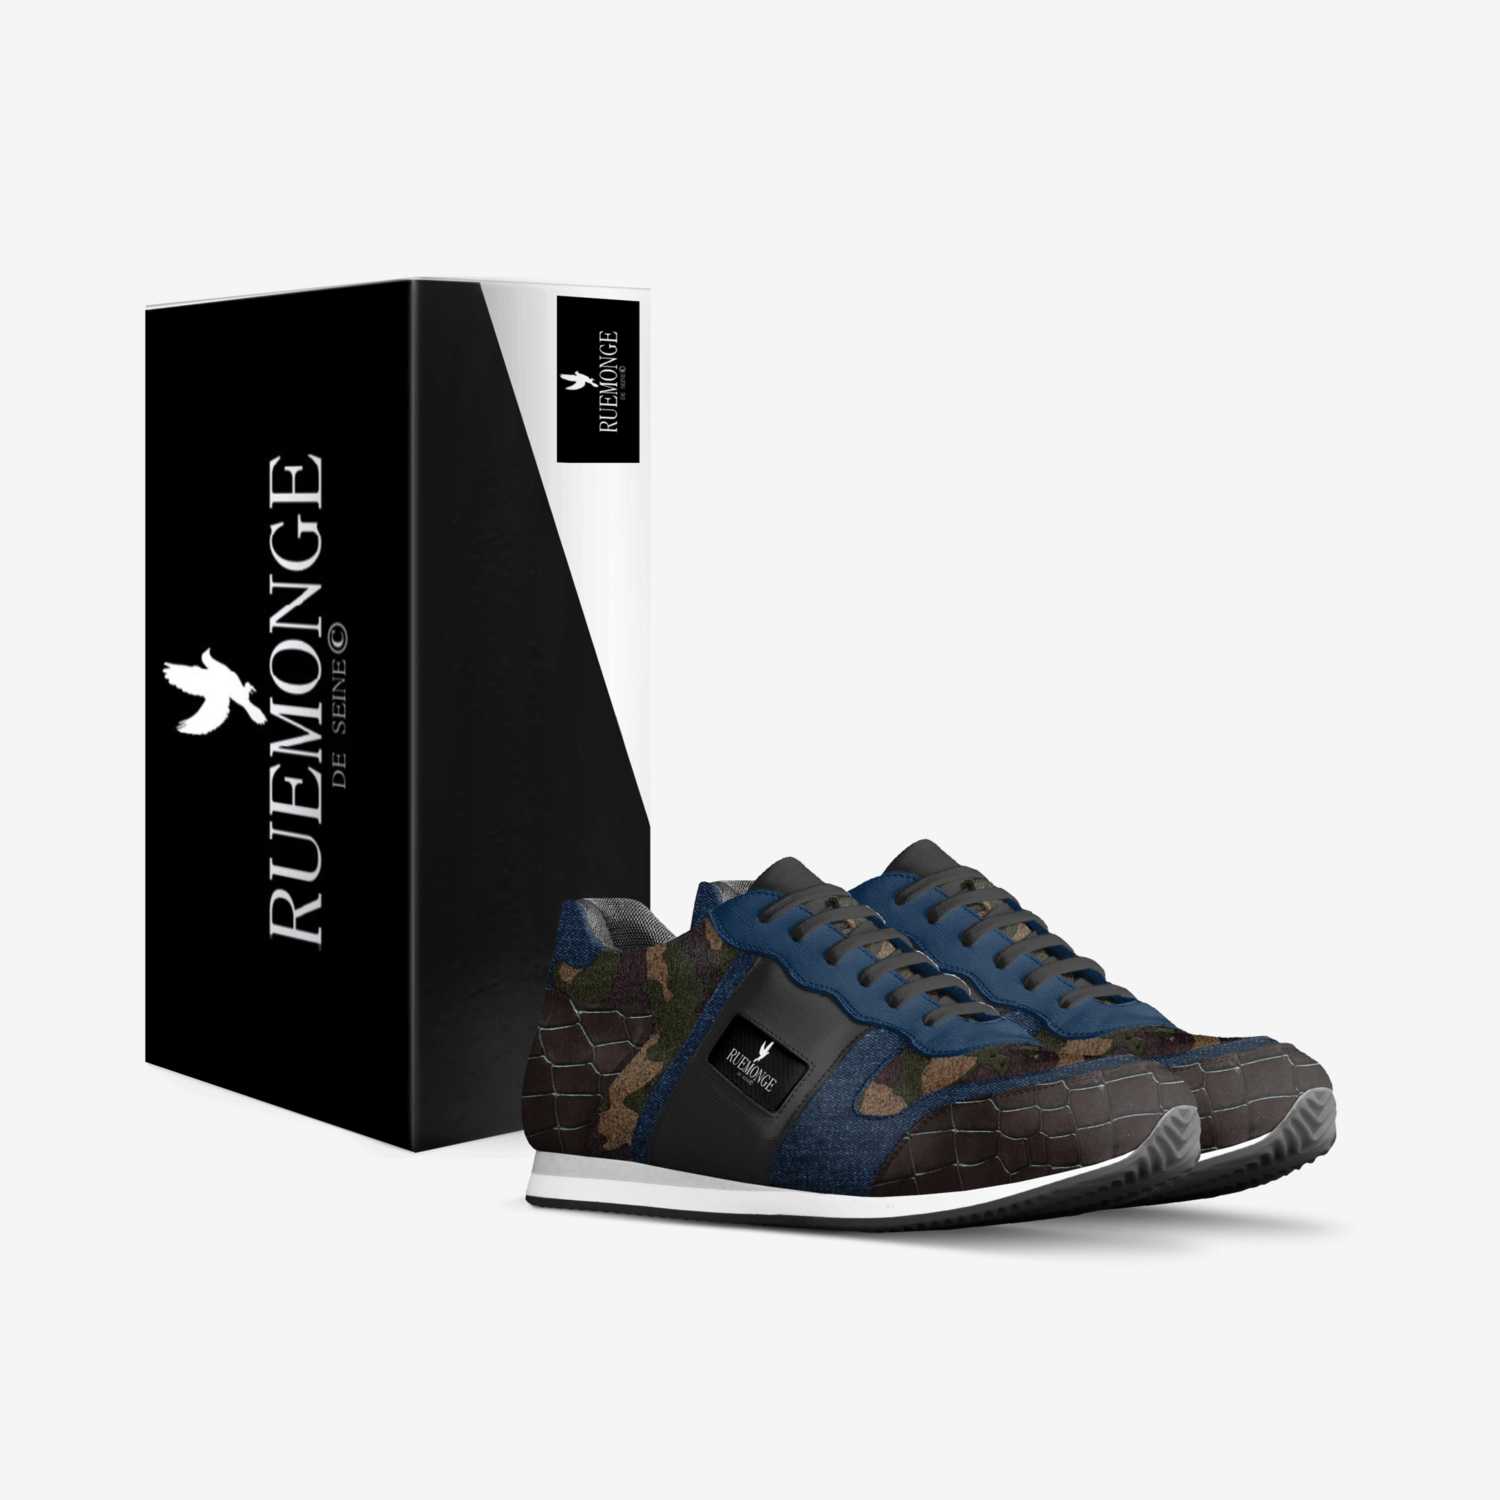 Ruemonge de seine  custom made in Italy shoes by Ruemonge De'Seine | Box view